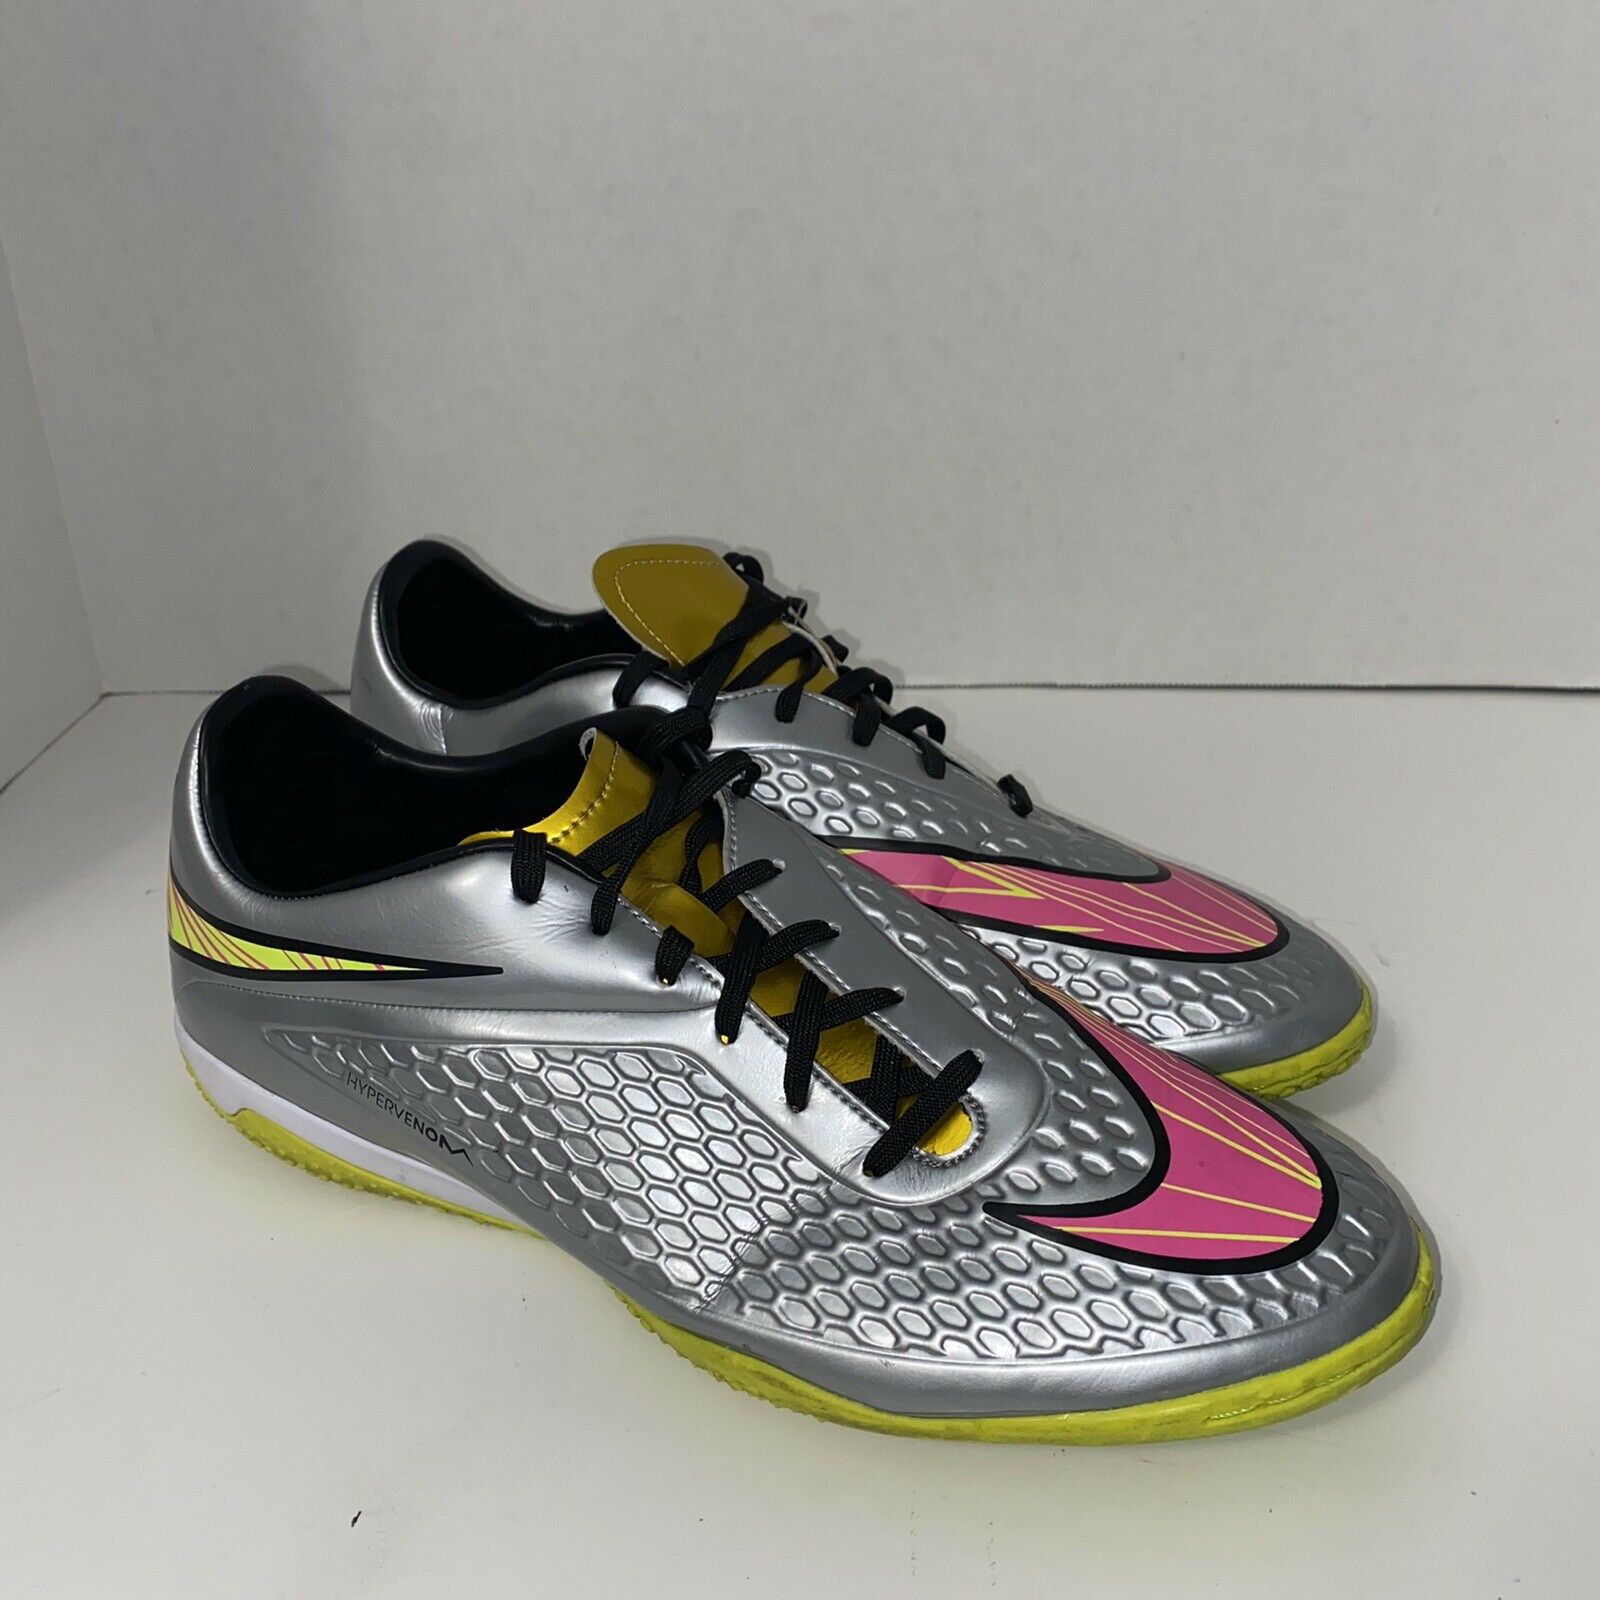 Nike Hypervenom Phelon Prem IC 677587 069 Grey Pink Indoor Soccer Shoes Men’s 11